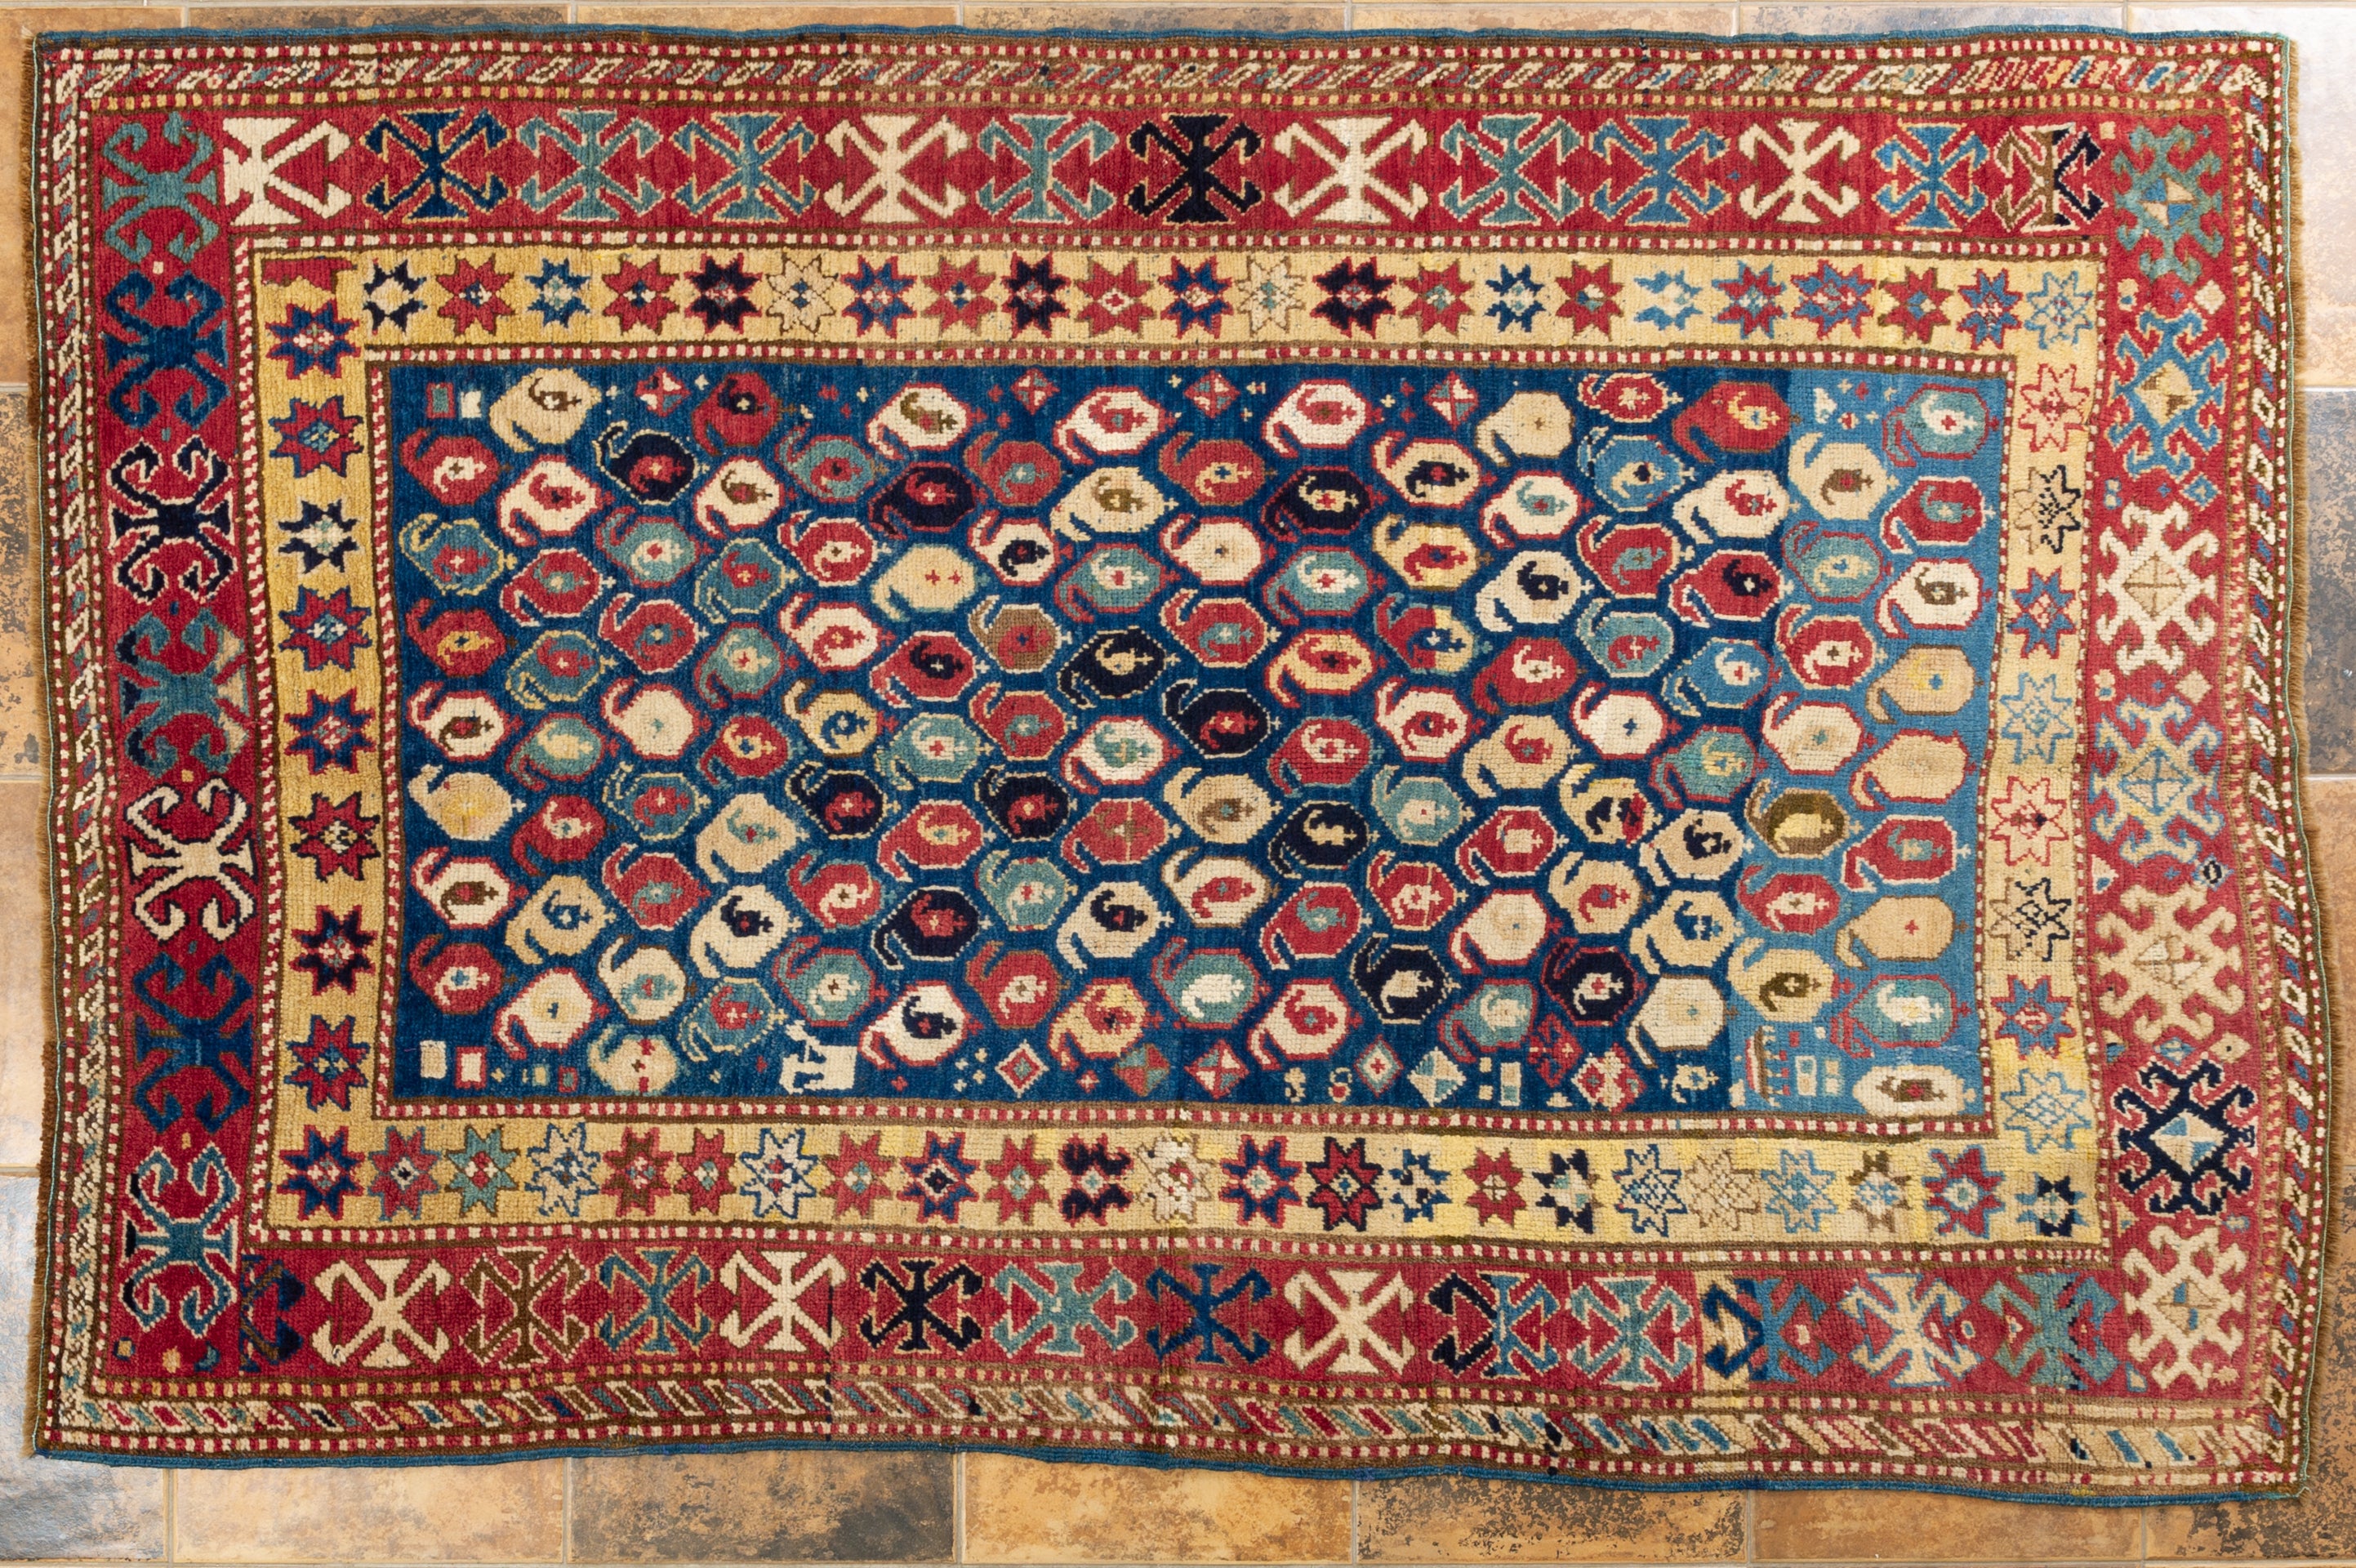 Antiker schöner Teppich in feiner blauer Farbe: Die Kazak gehören zu den berühmtesten Stammesteppichen für ihre trockenen geometrischen Muster in wunderbaren Farben. 
Sein 